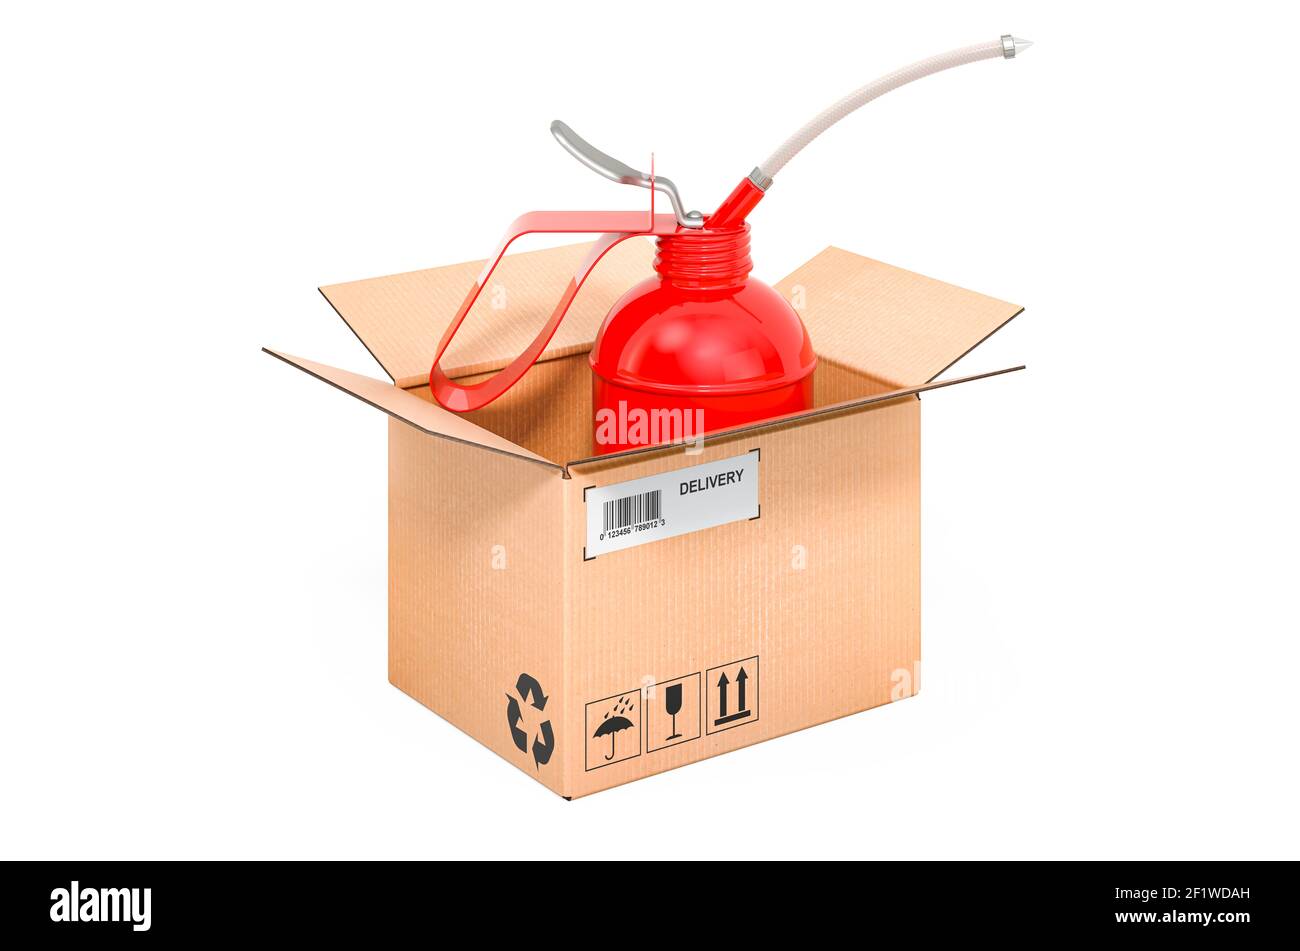 Lubrificateur, burette d'huile rouge à l'intérieur de la boîte en carton, concept de livraison. Rendu 3D isolé sur fond blanc Banque D'Images